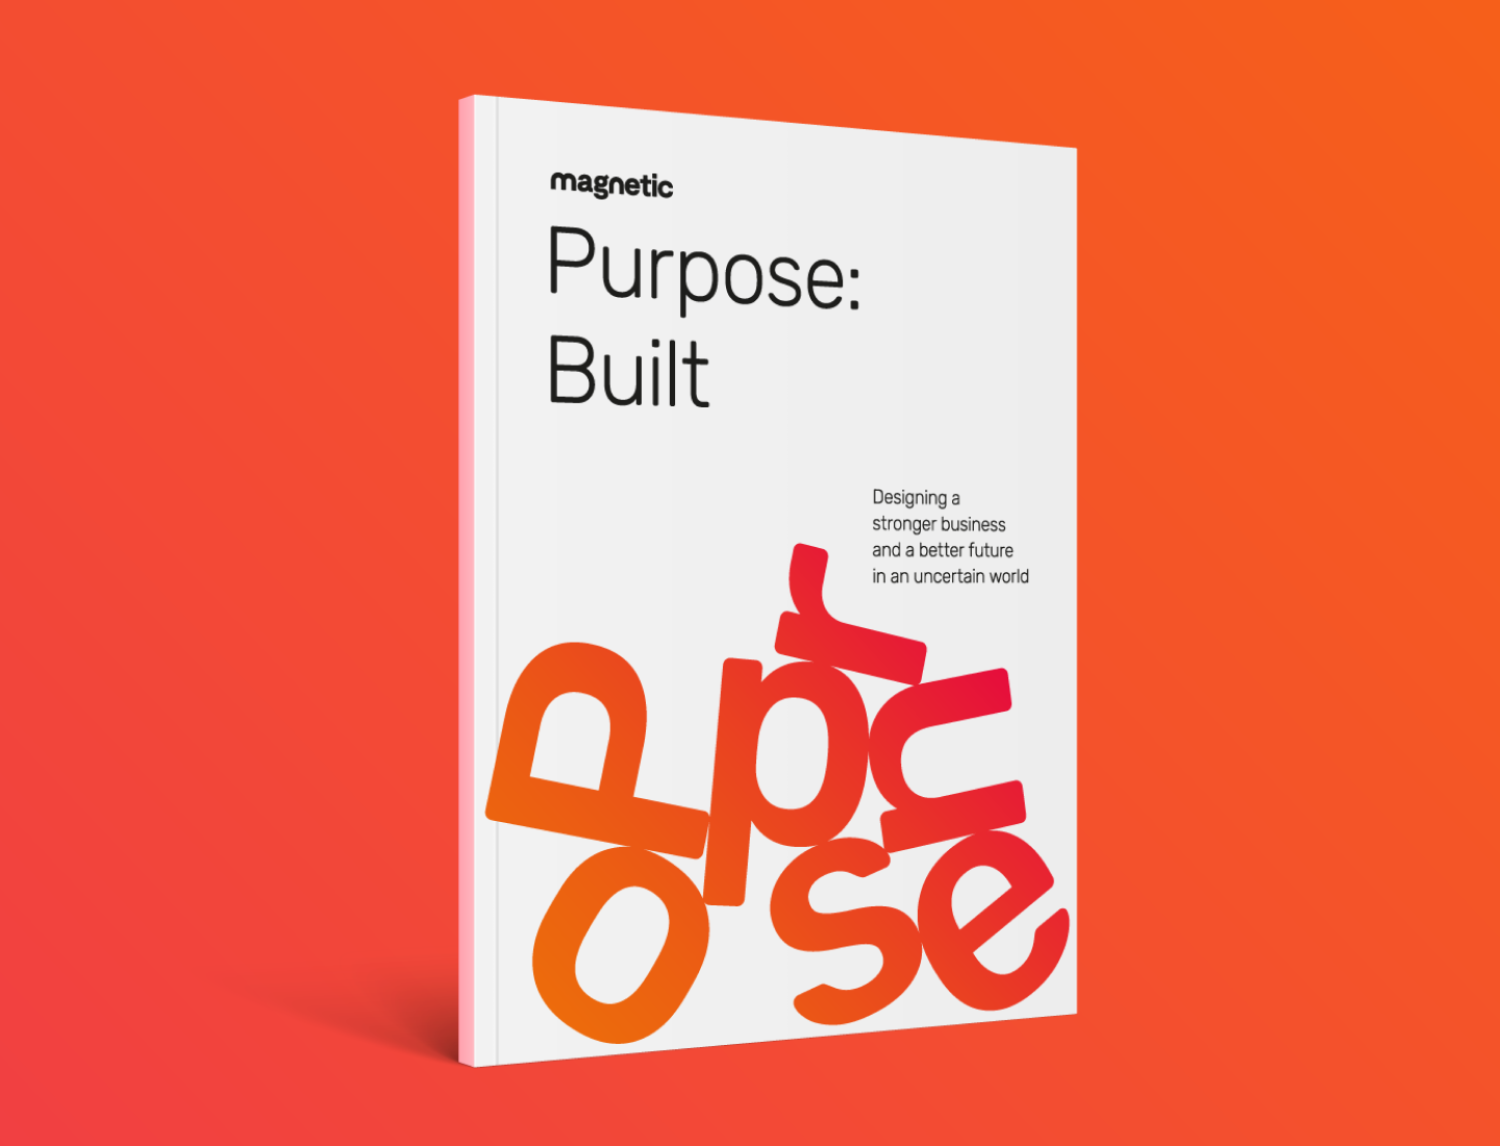 Purpose: Built